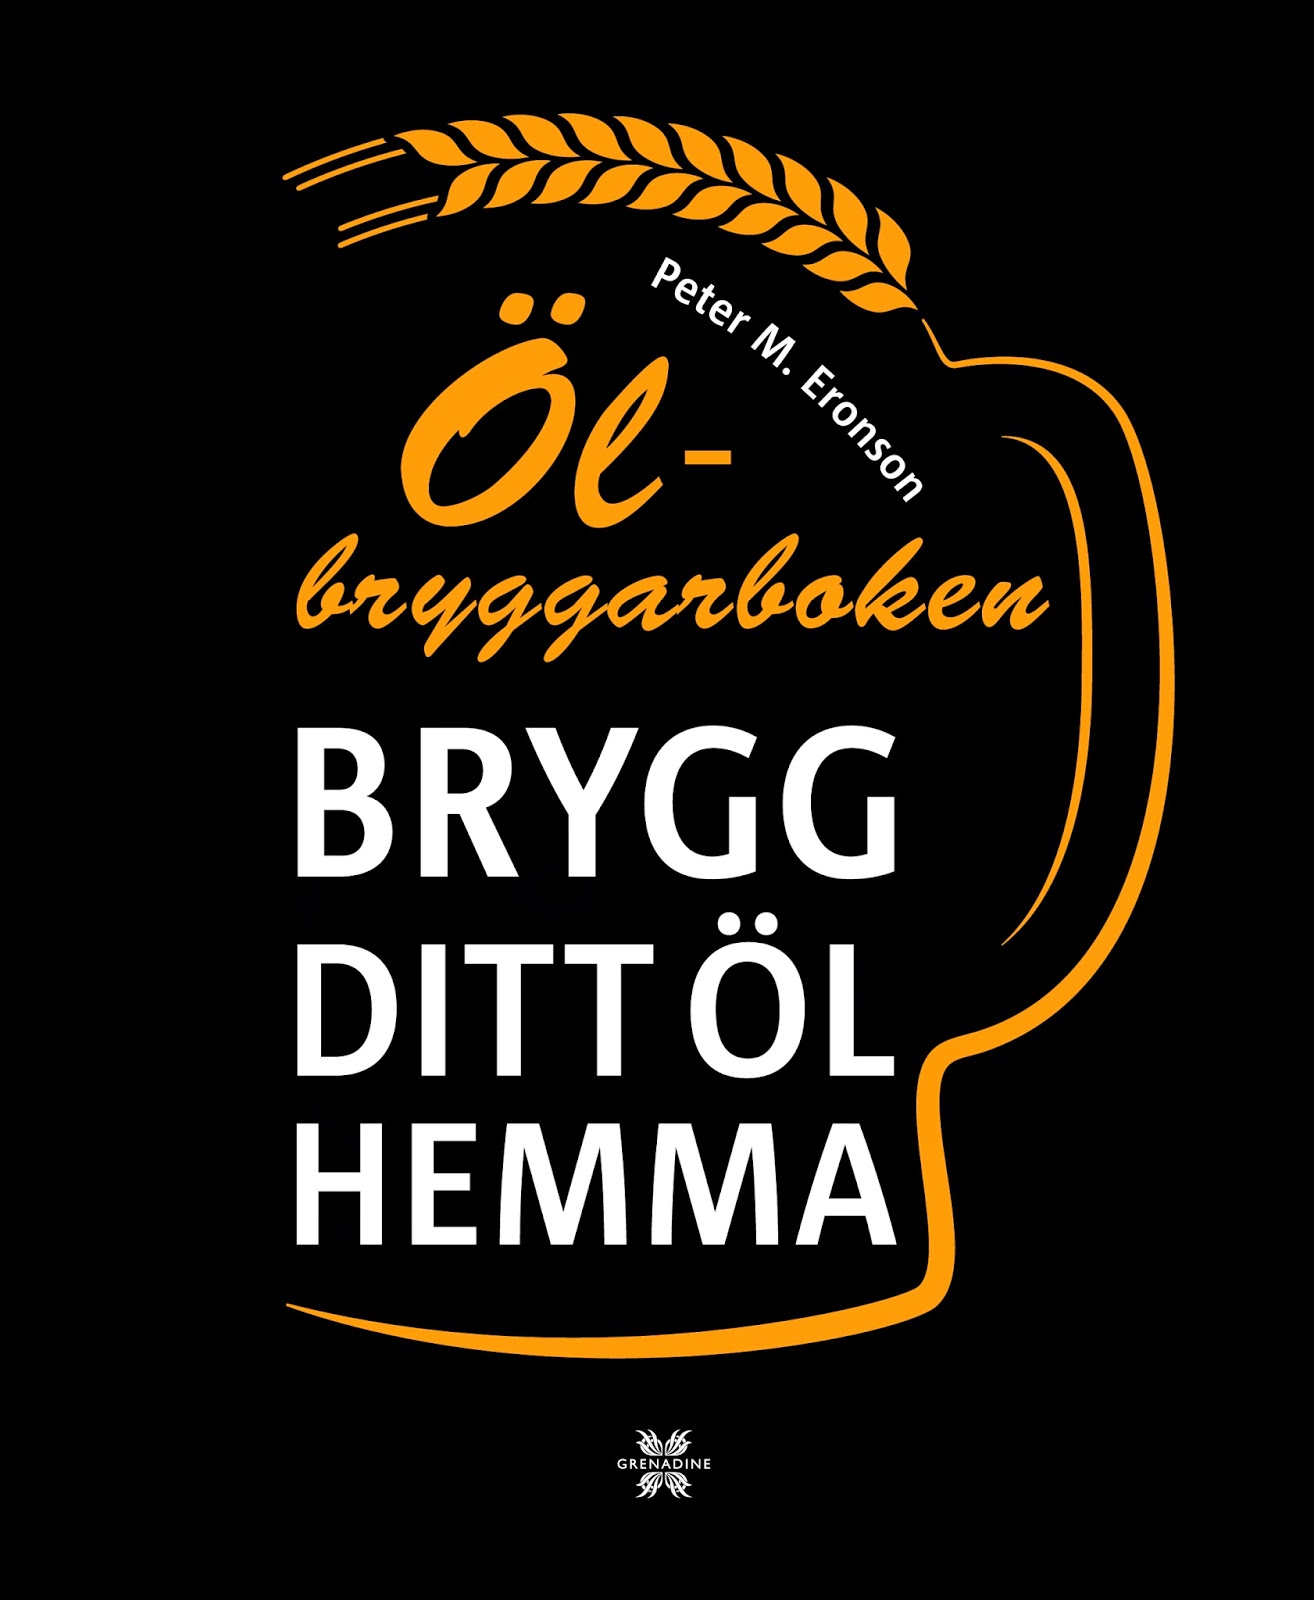 BRYGG DITT EGET ØL HJEMME, Svensk